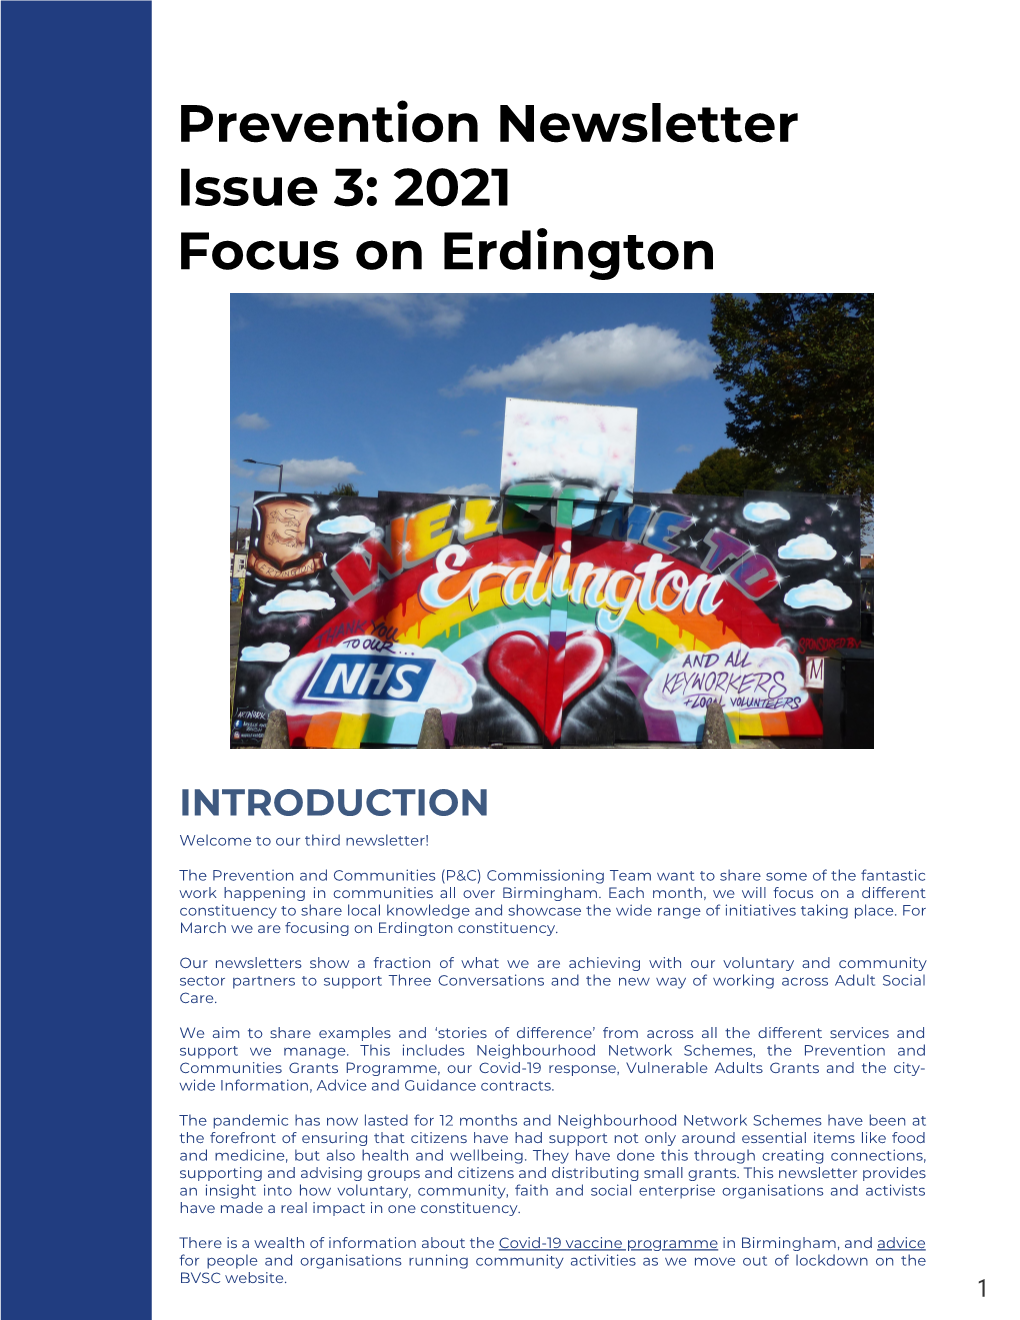 Prevention Newsletter Issue 3: 2021 Focus on Erdington